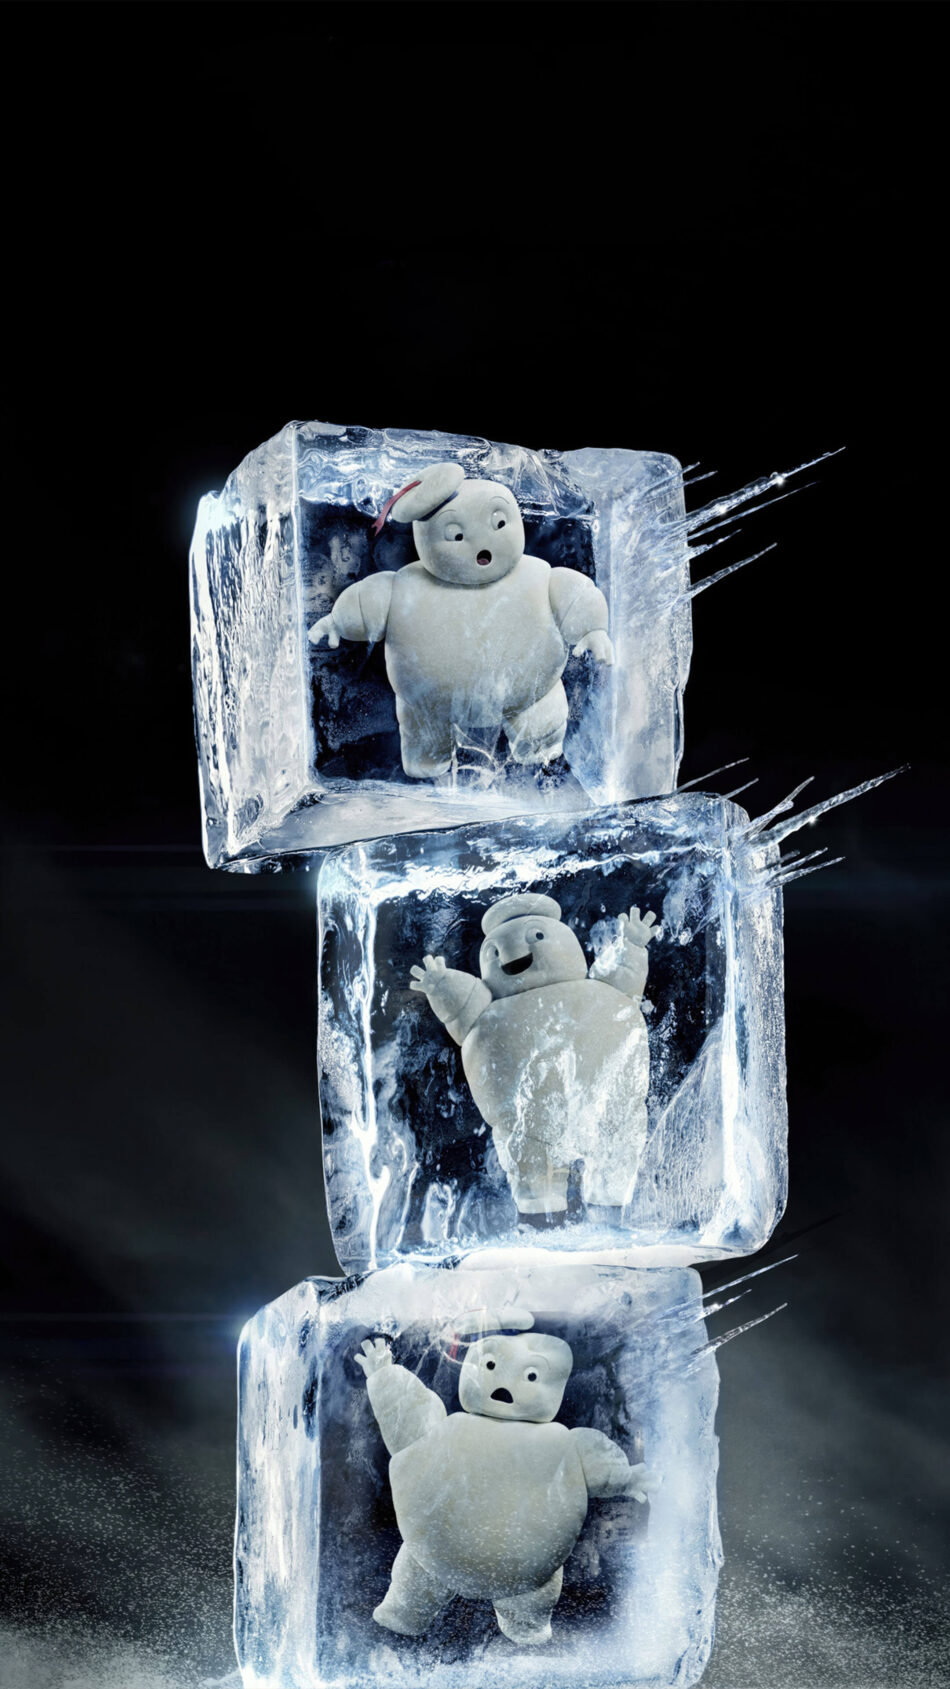 Marshmallow Man Ghostbusters - Frozen Empire 4K Ultra HD Mobile Wallpaper